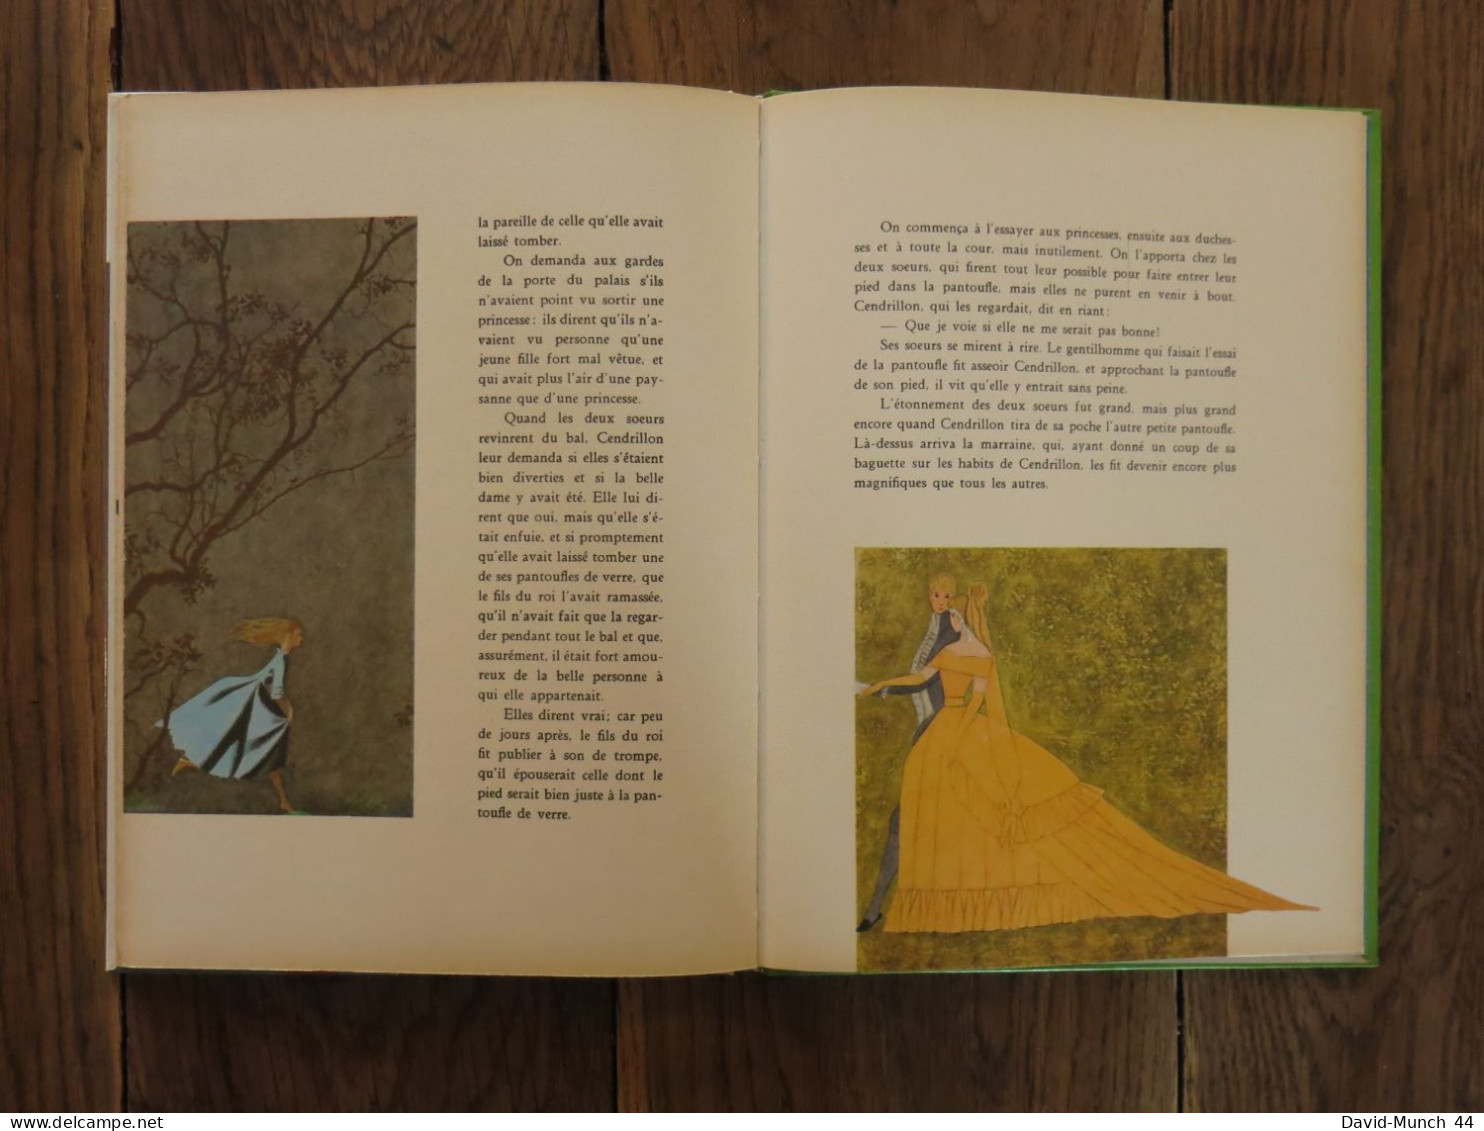 Le chat botté & Cendrillon de Perrault, illustré par Una. O.D.E.J., Collection Merveilles. 1966